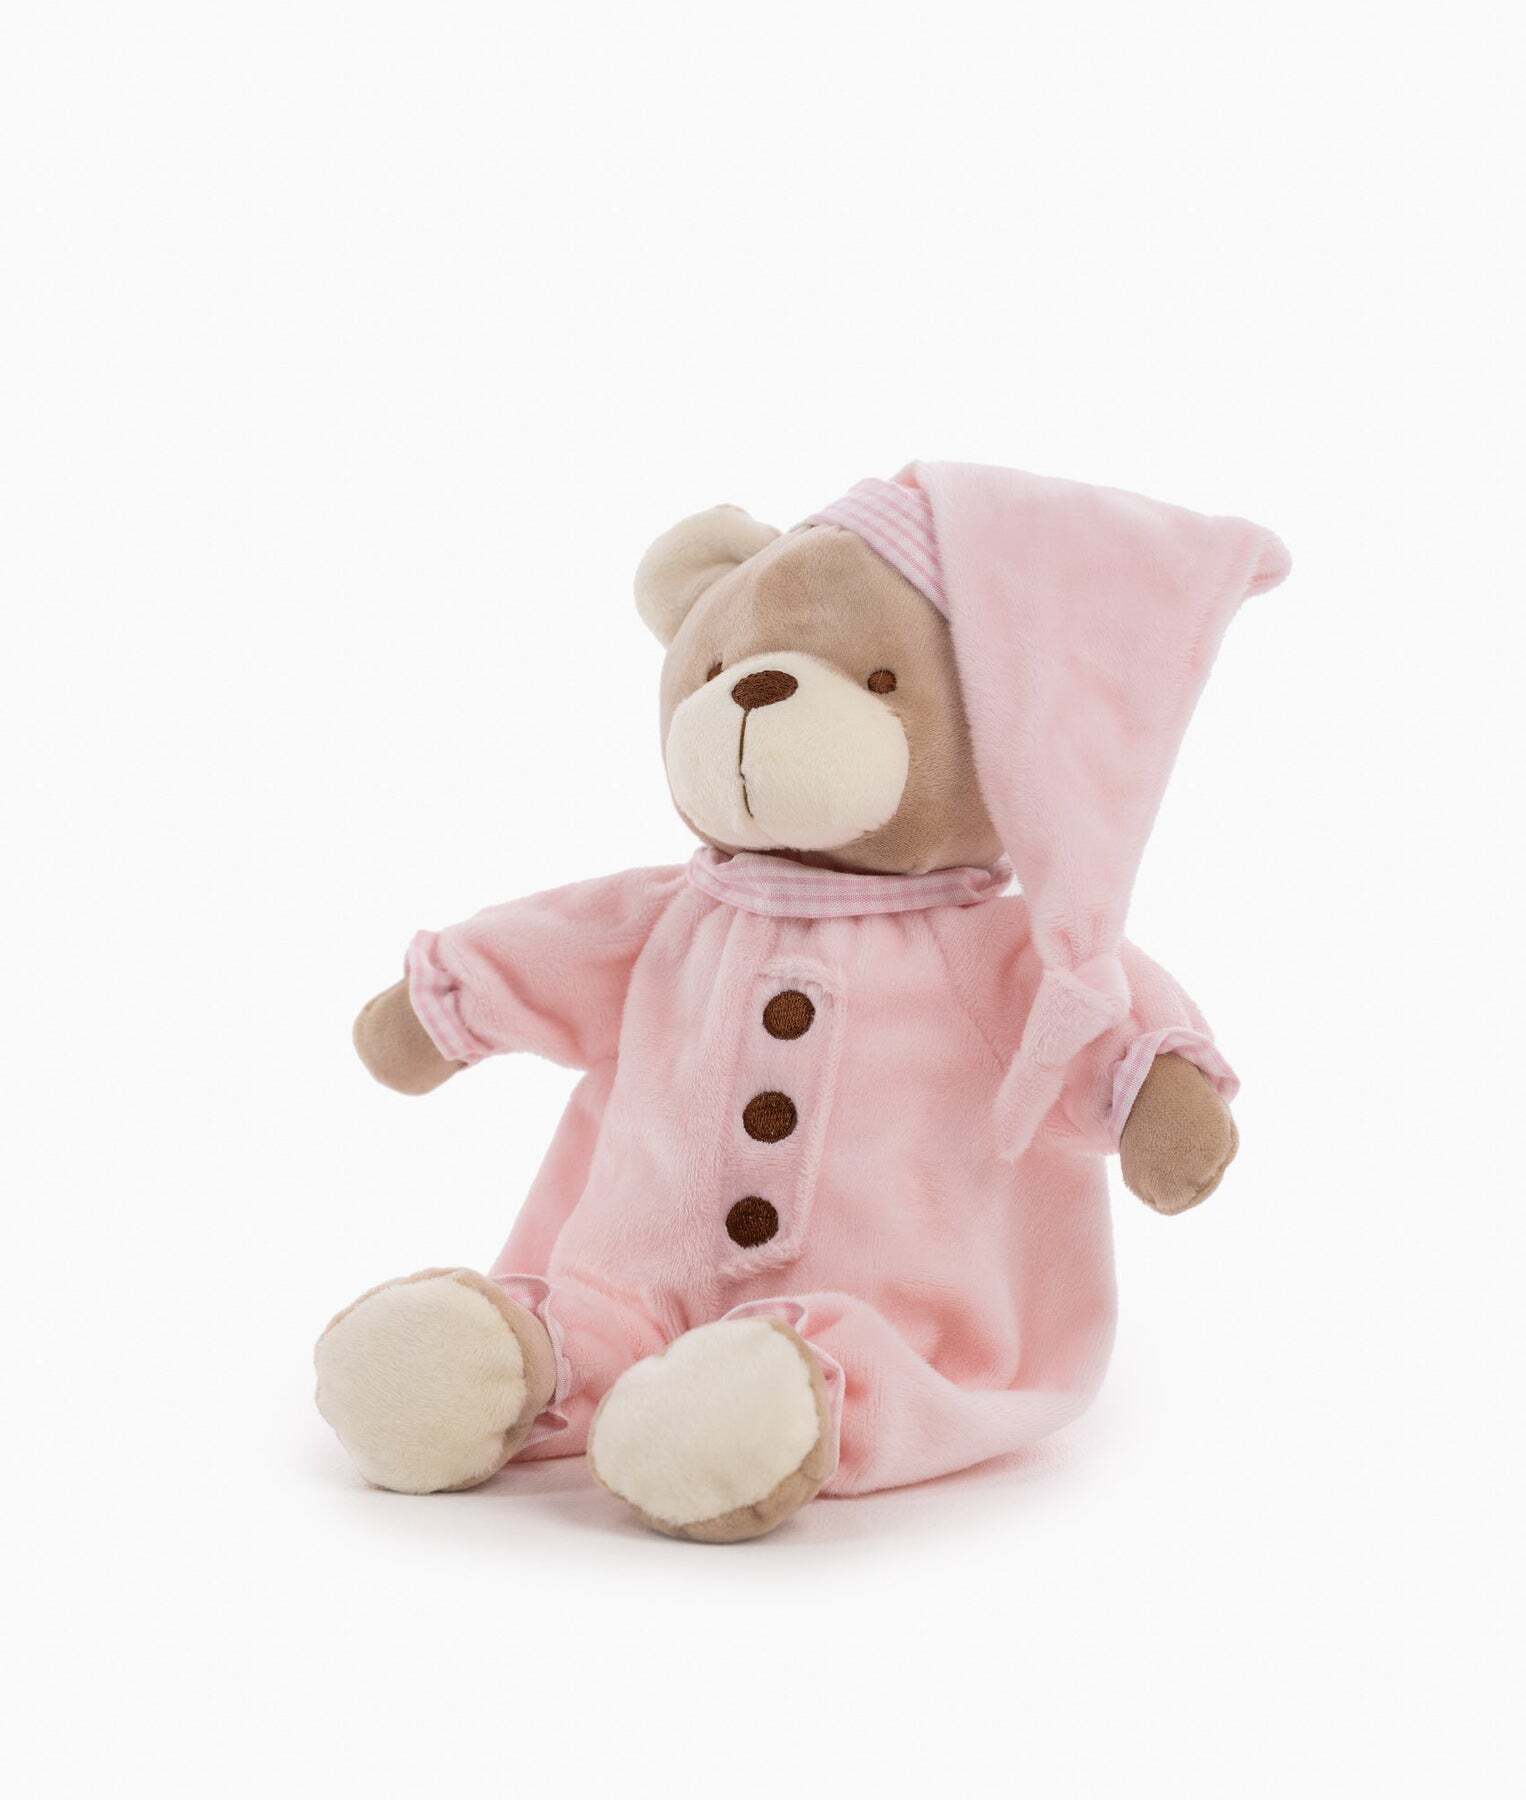 button-bear-pink-971_1800x1800